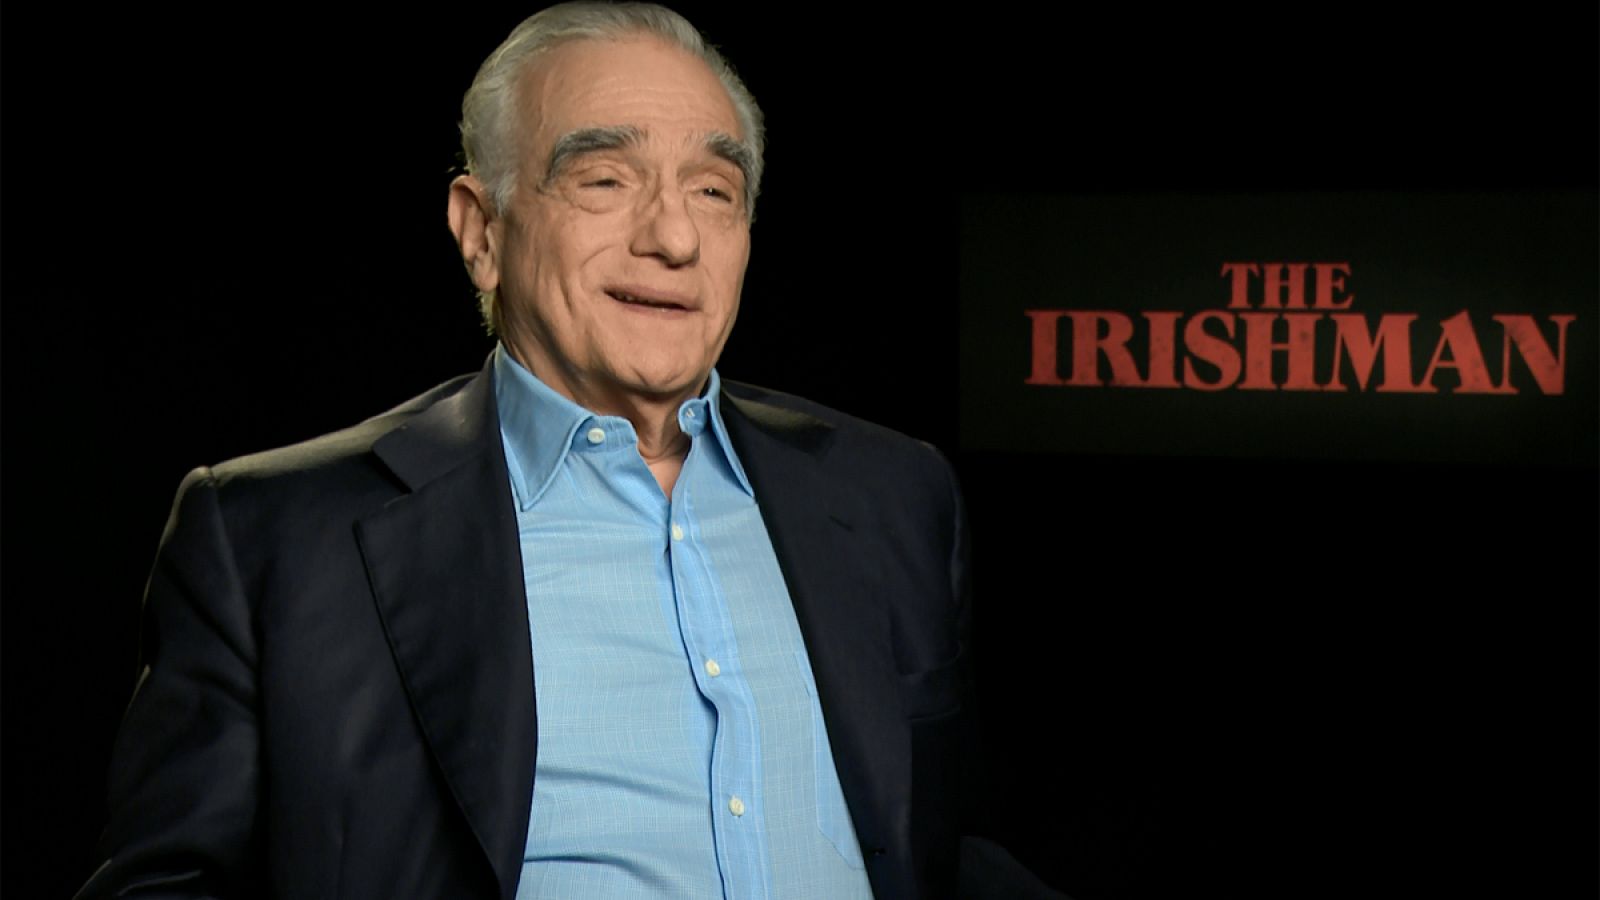 Días de cine entrevista a Martin Scorsese por 'El irlandés'